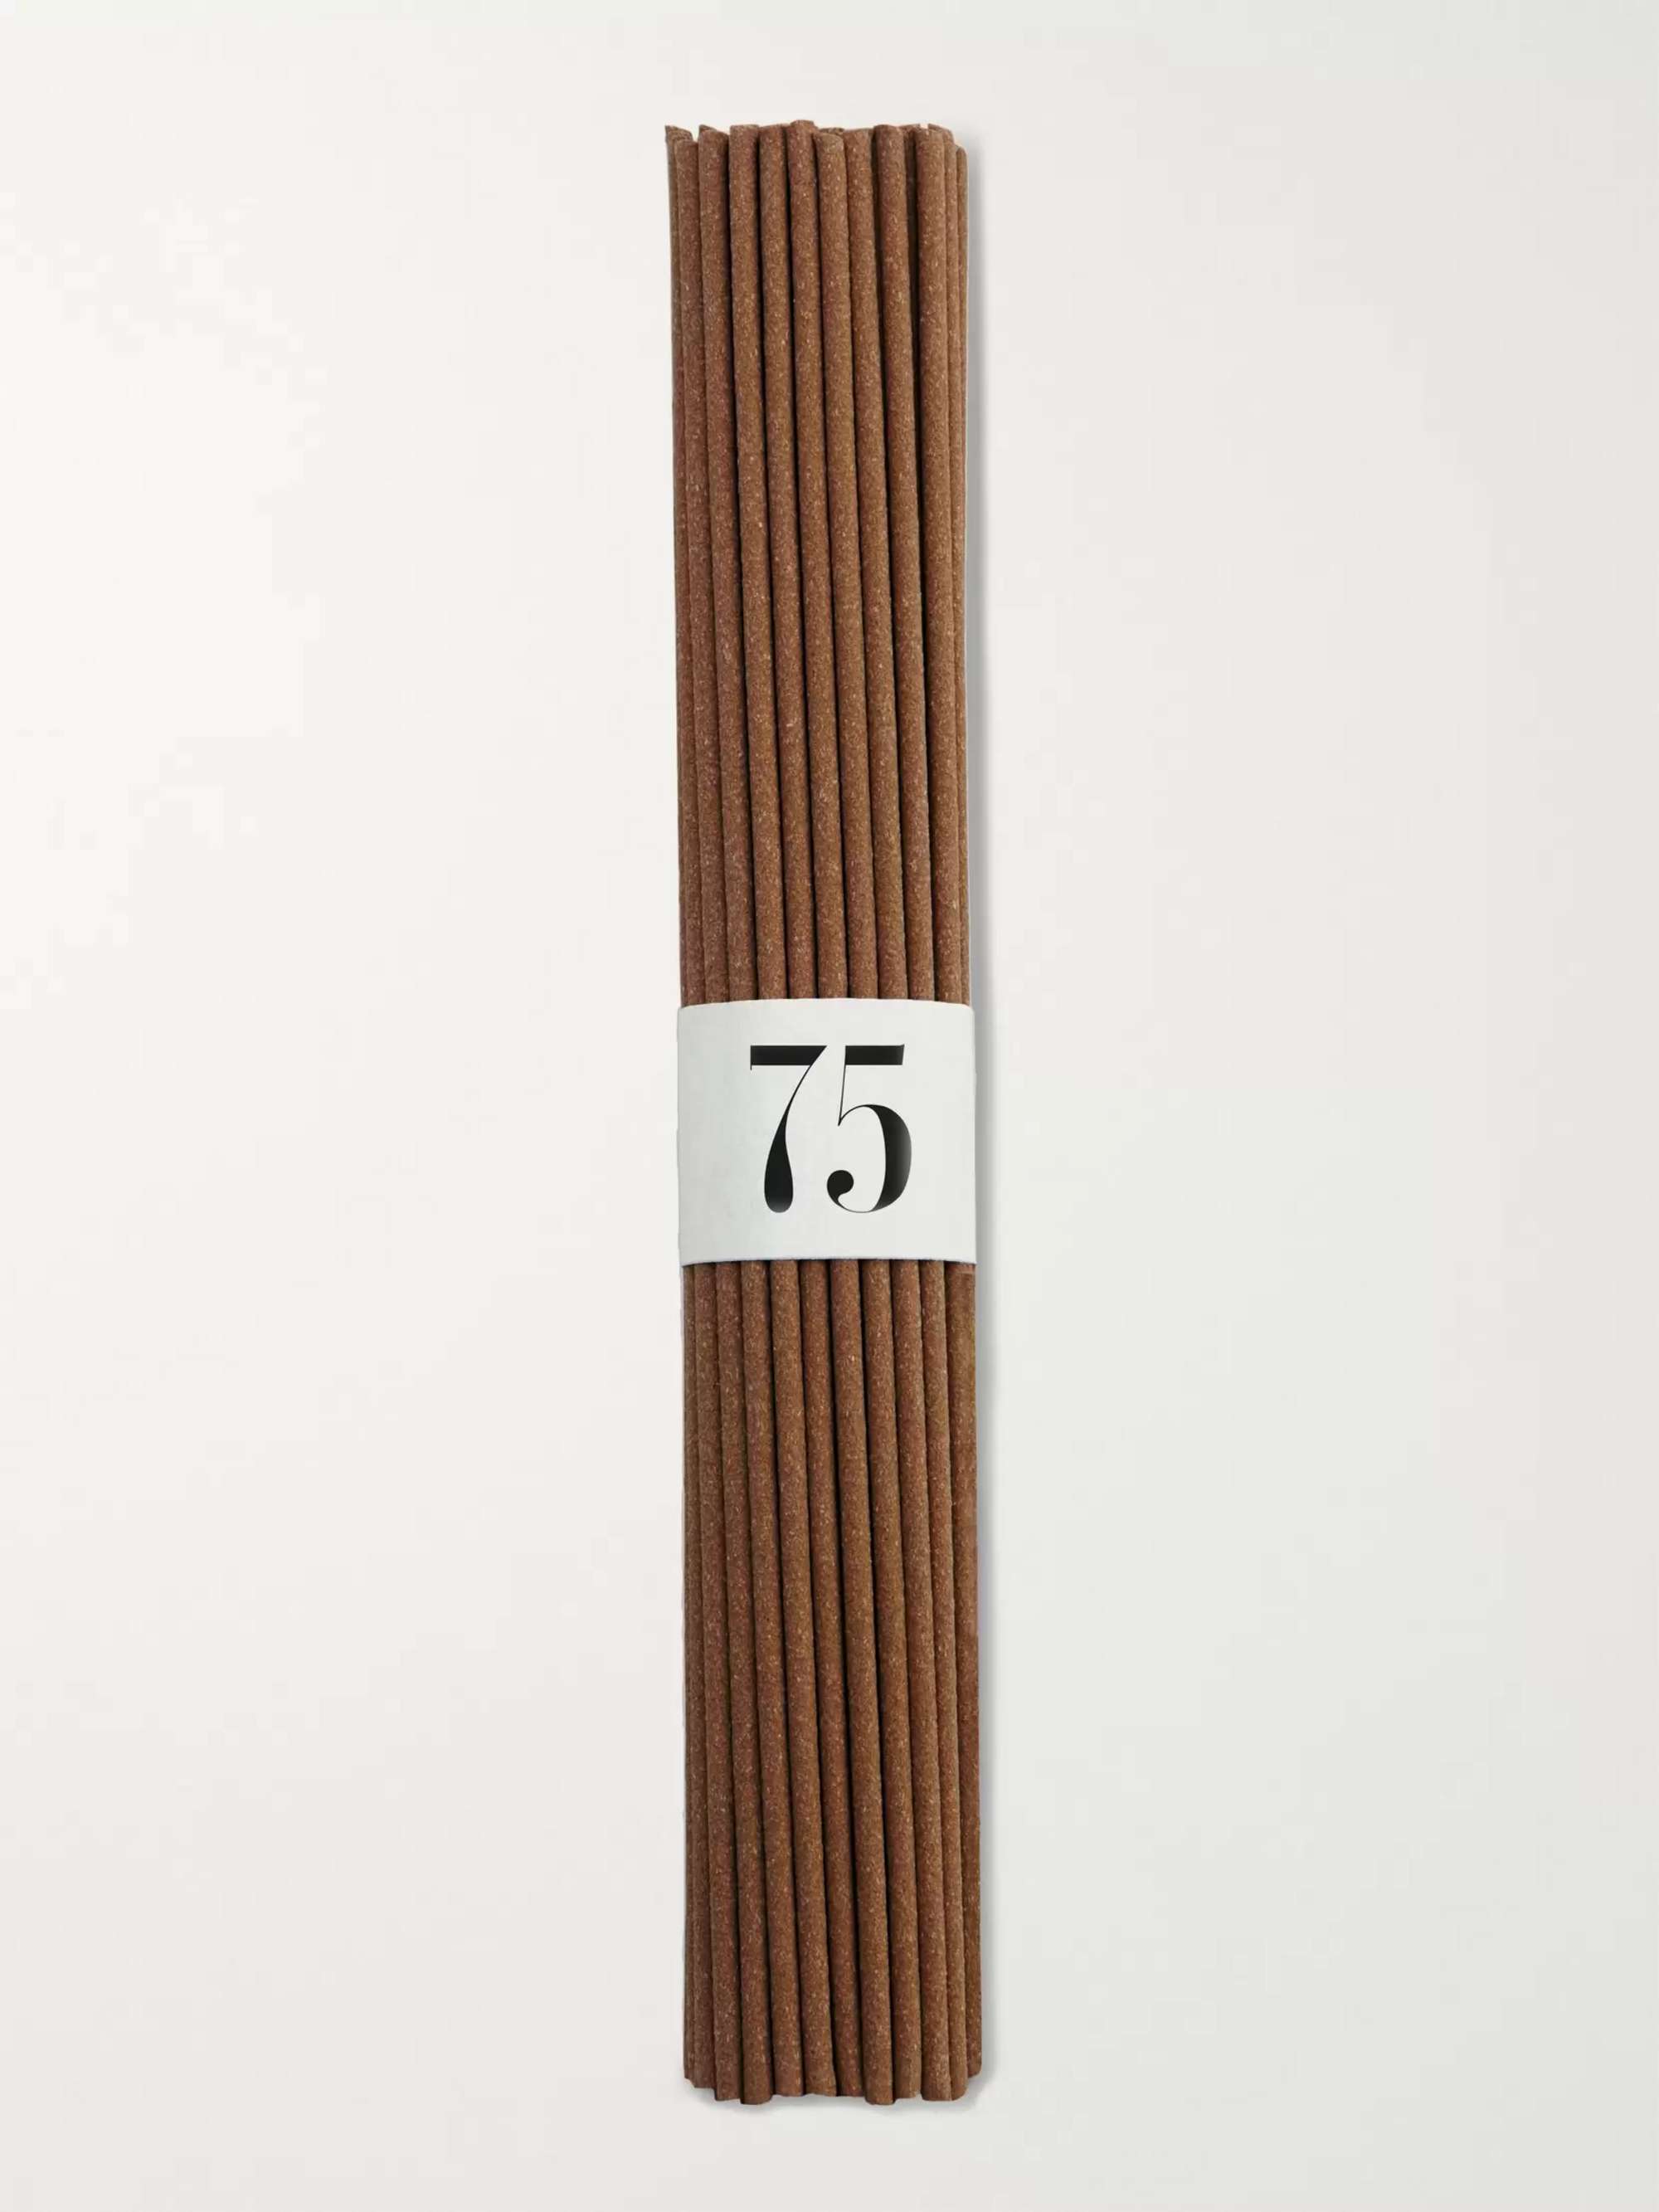 L'OBJET Thé Russe No.75 Incense Sticks